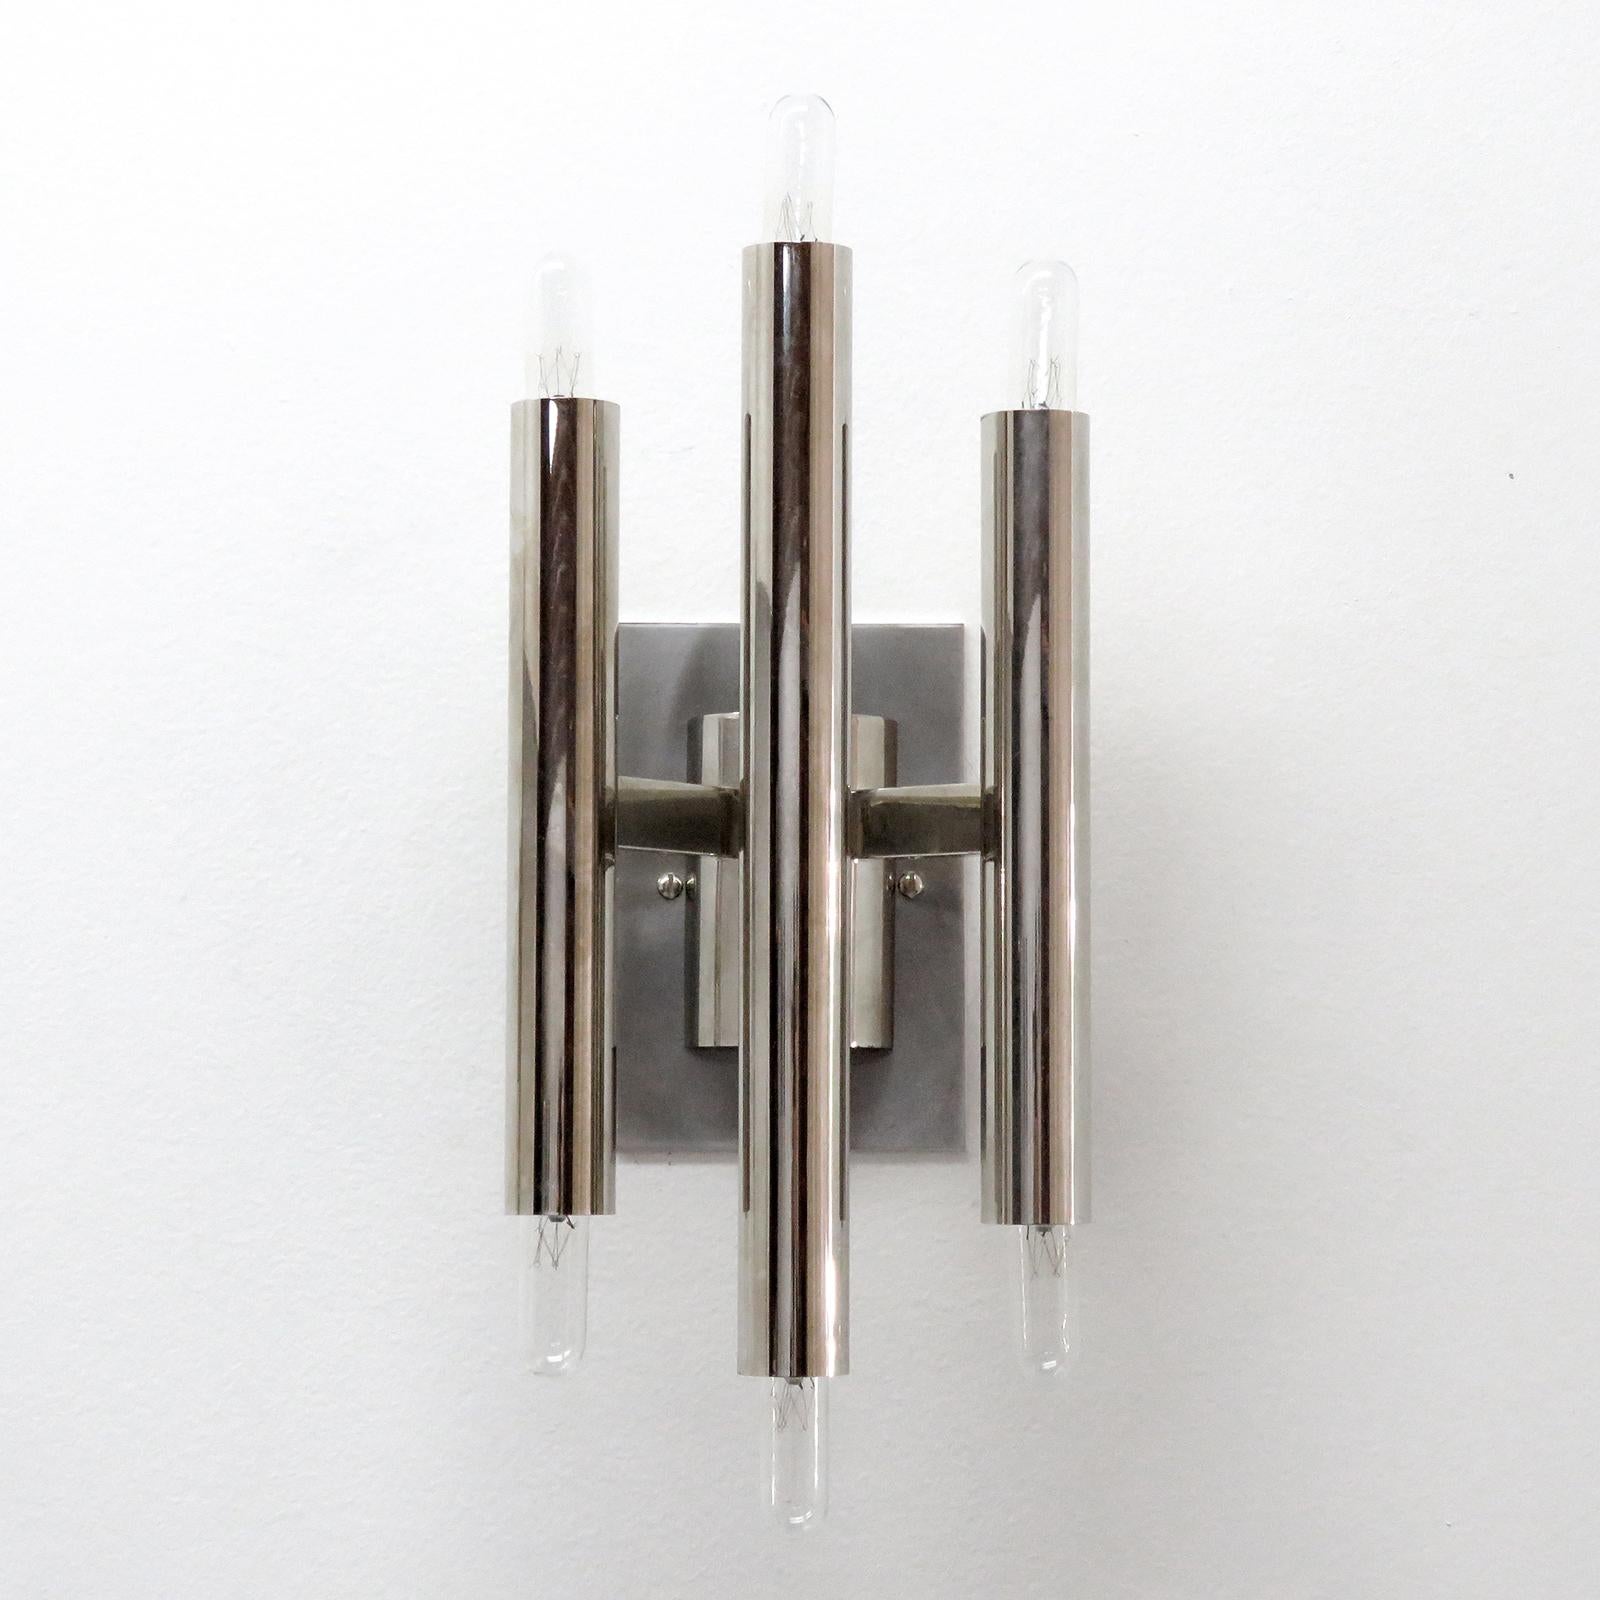 Superbe paire d'appliques géométriques de Gaetano Sciolari avec trois doubles bougies nickelées. Six douilles E12 par luminaire, puissance maximale de 40 W chacune ou équivalent LED, câblées selon les normes américaines, les ampoules sont fournies à